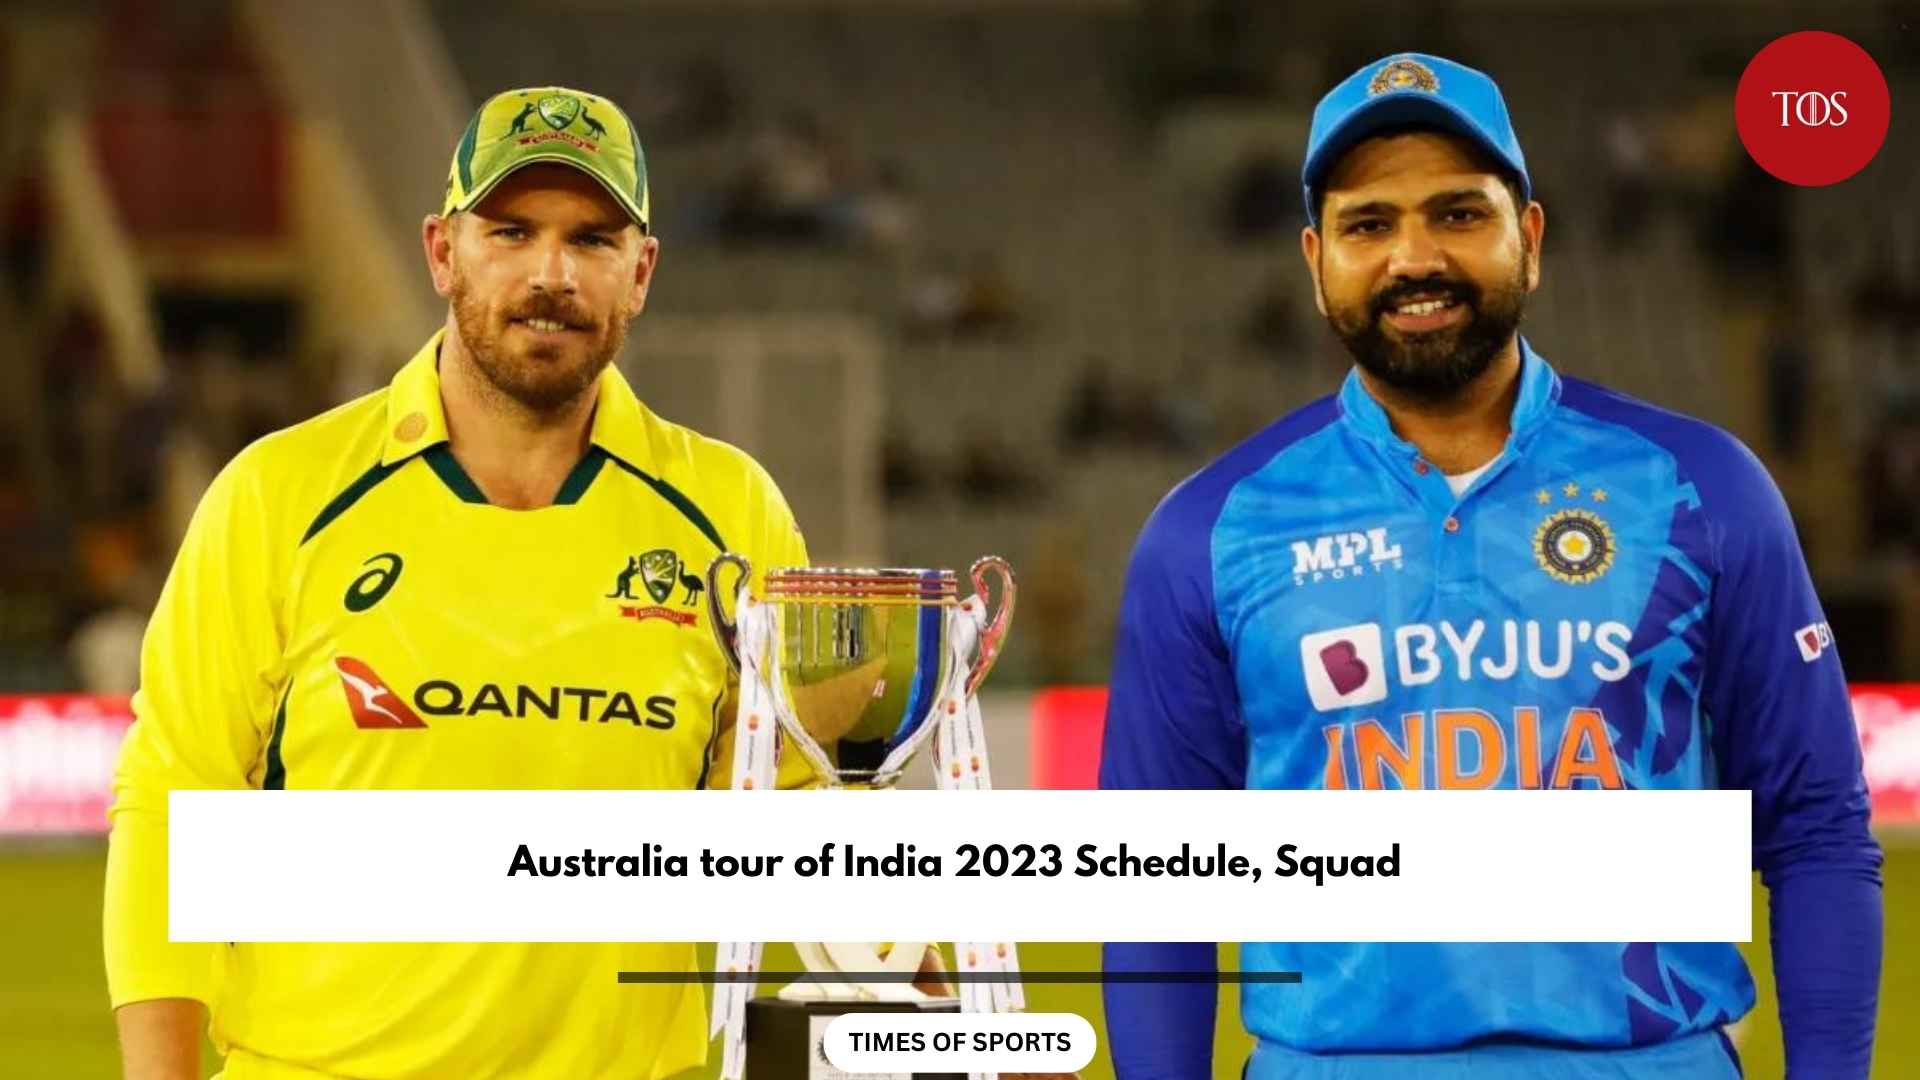 IND vs AUS 2023 Schedule, Squad Australia tour of India 2023